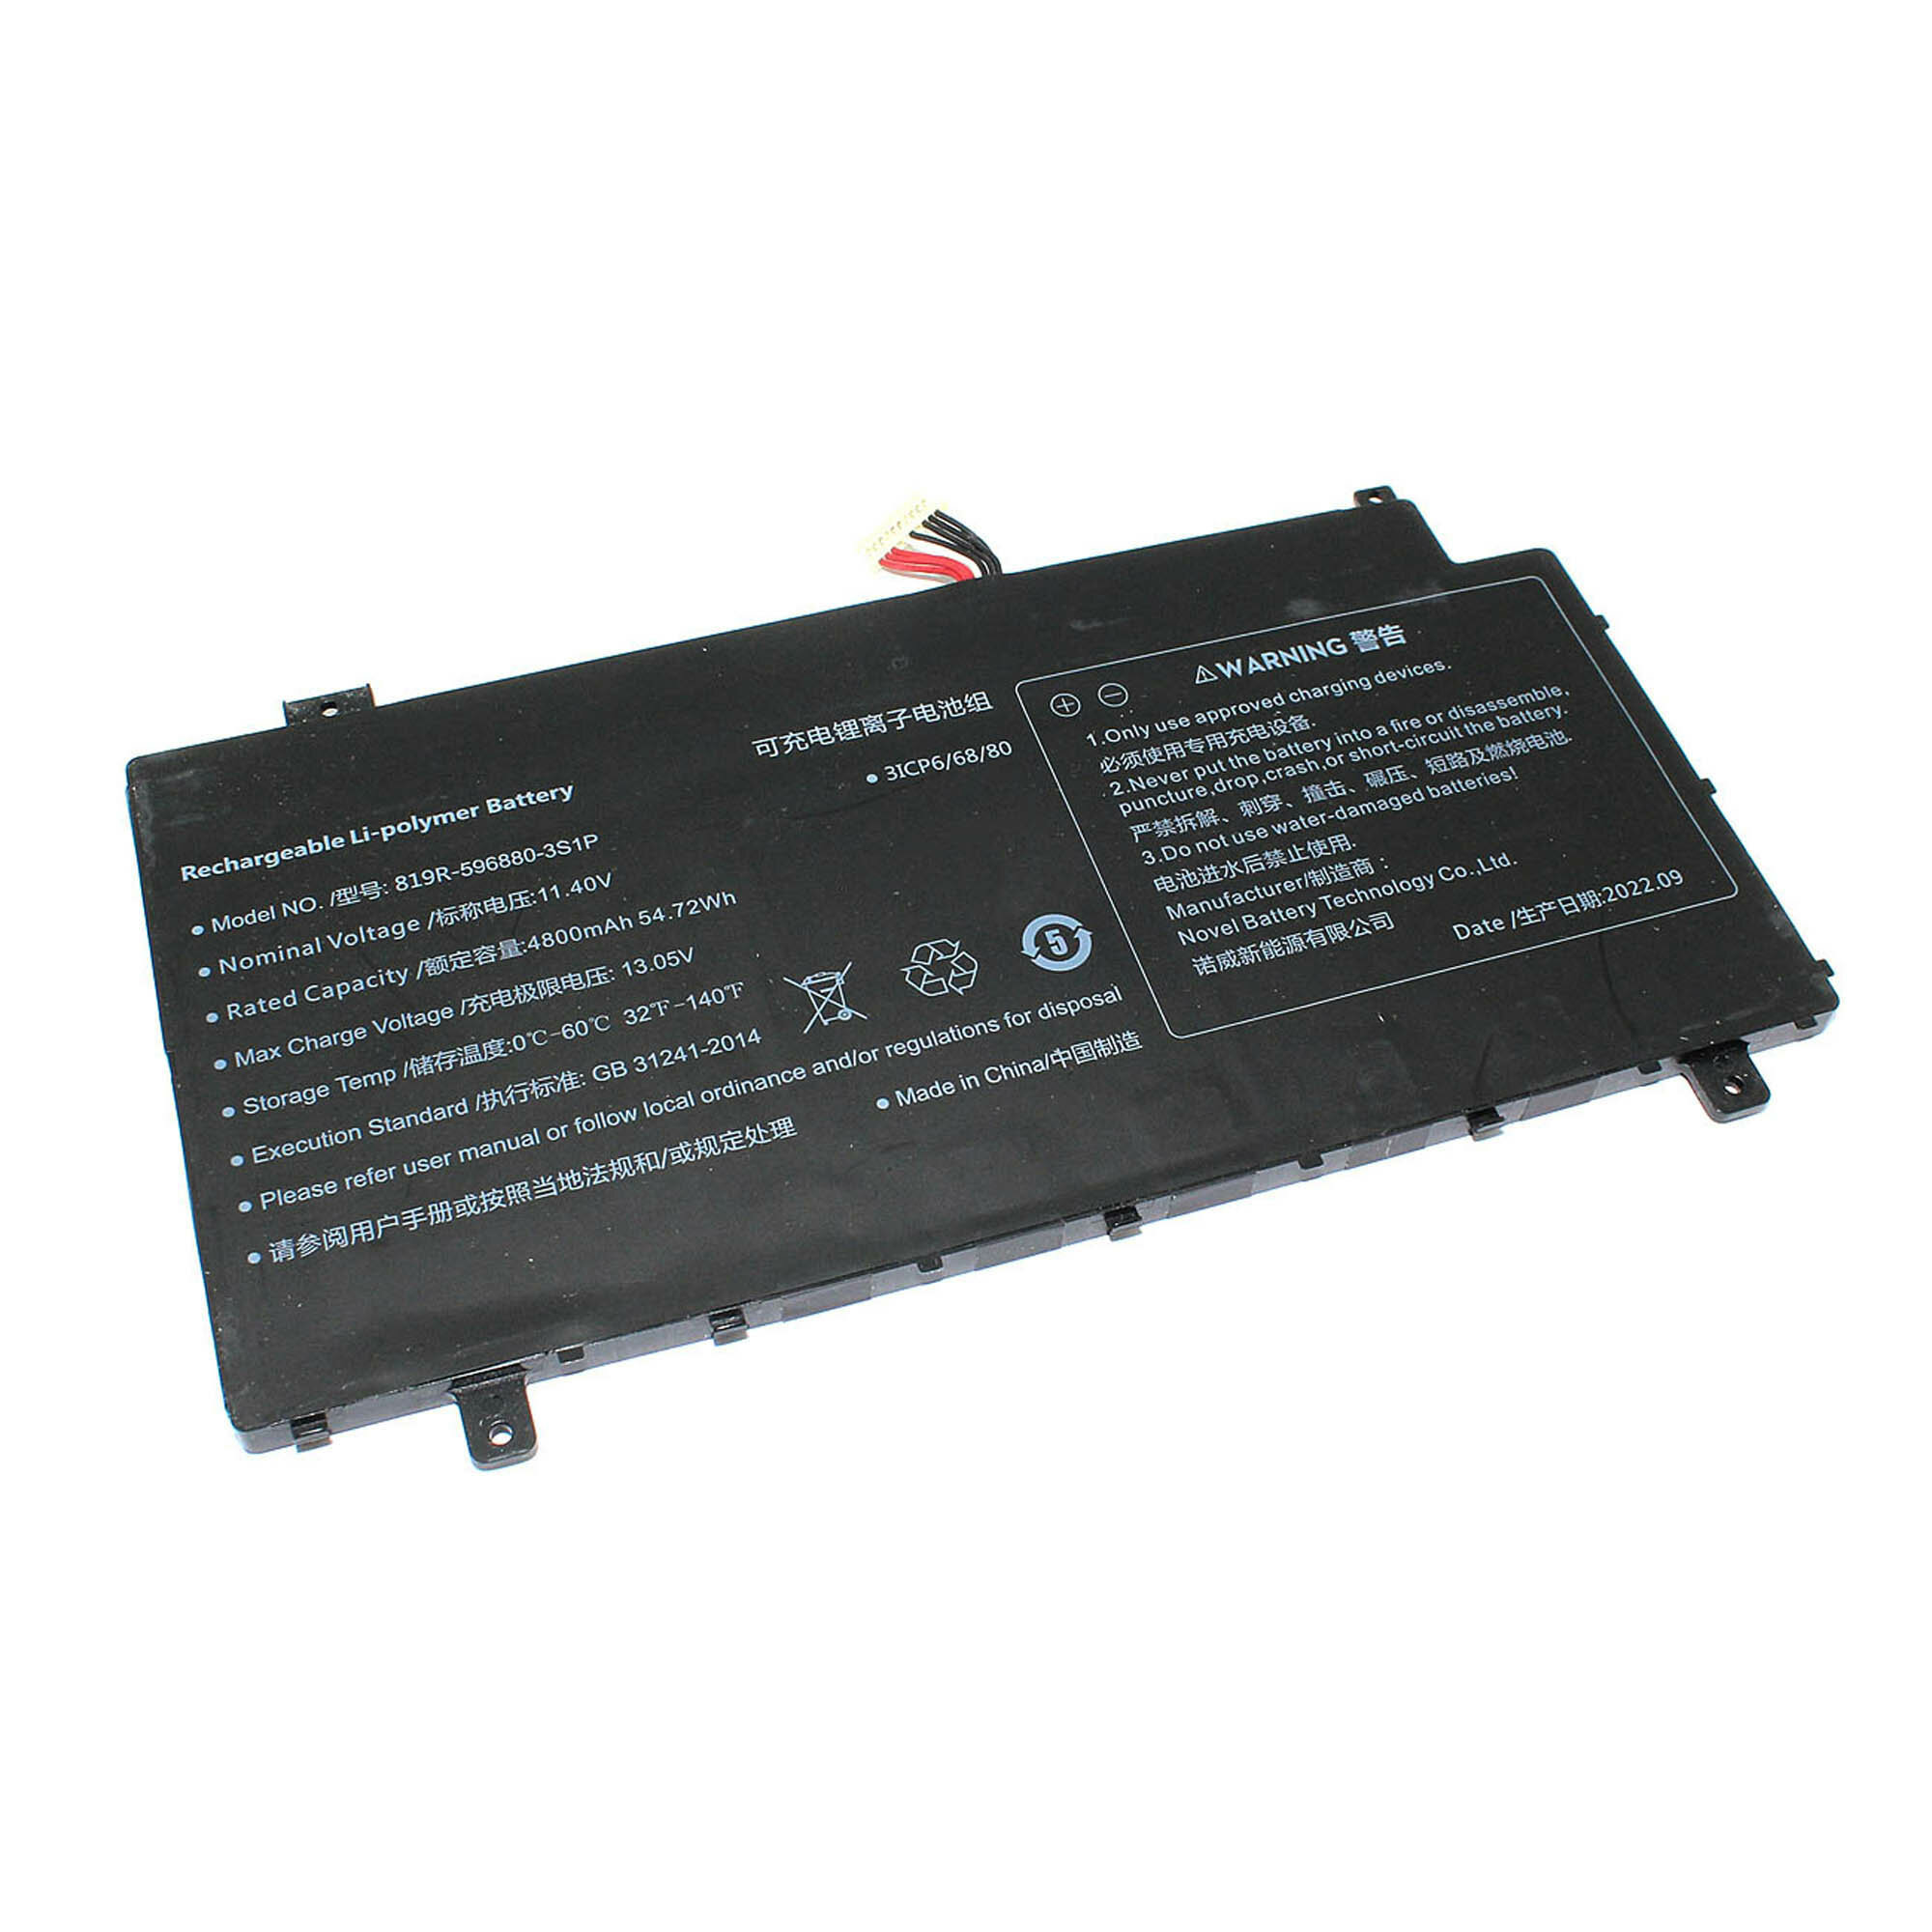 Аккумулятор 819R-596880-3S1P для ноутбука Haier AX1750SD 11.4V 4800mAh 54.72Wh черный